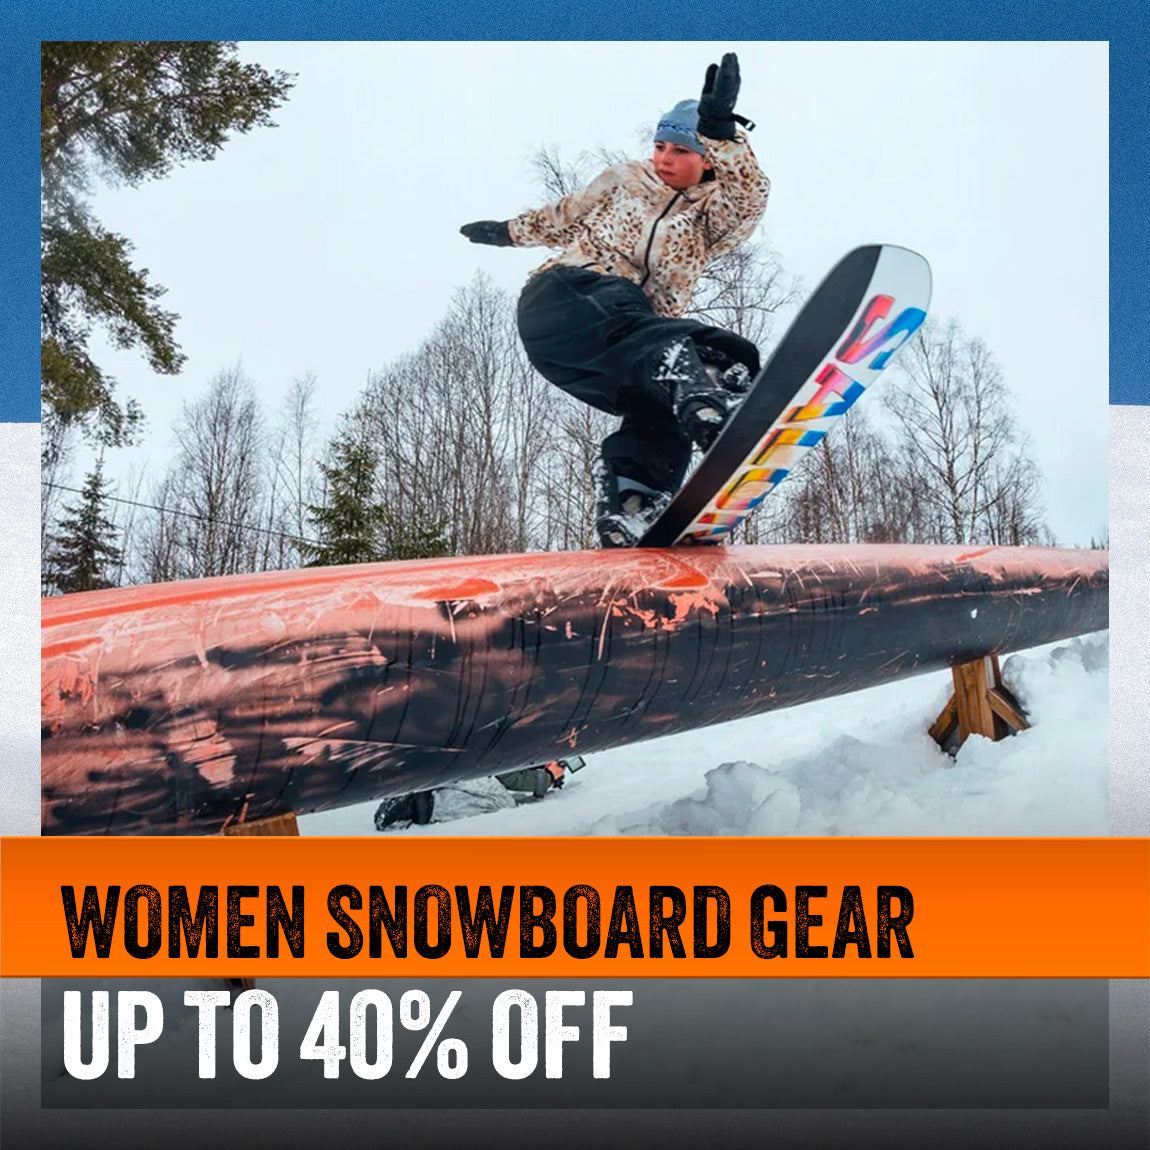 WOMEN SNOWBOARD GEAR